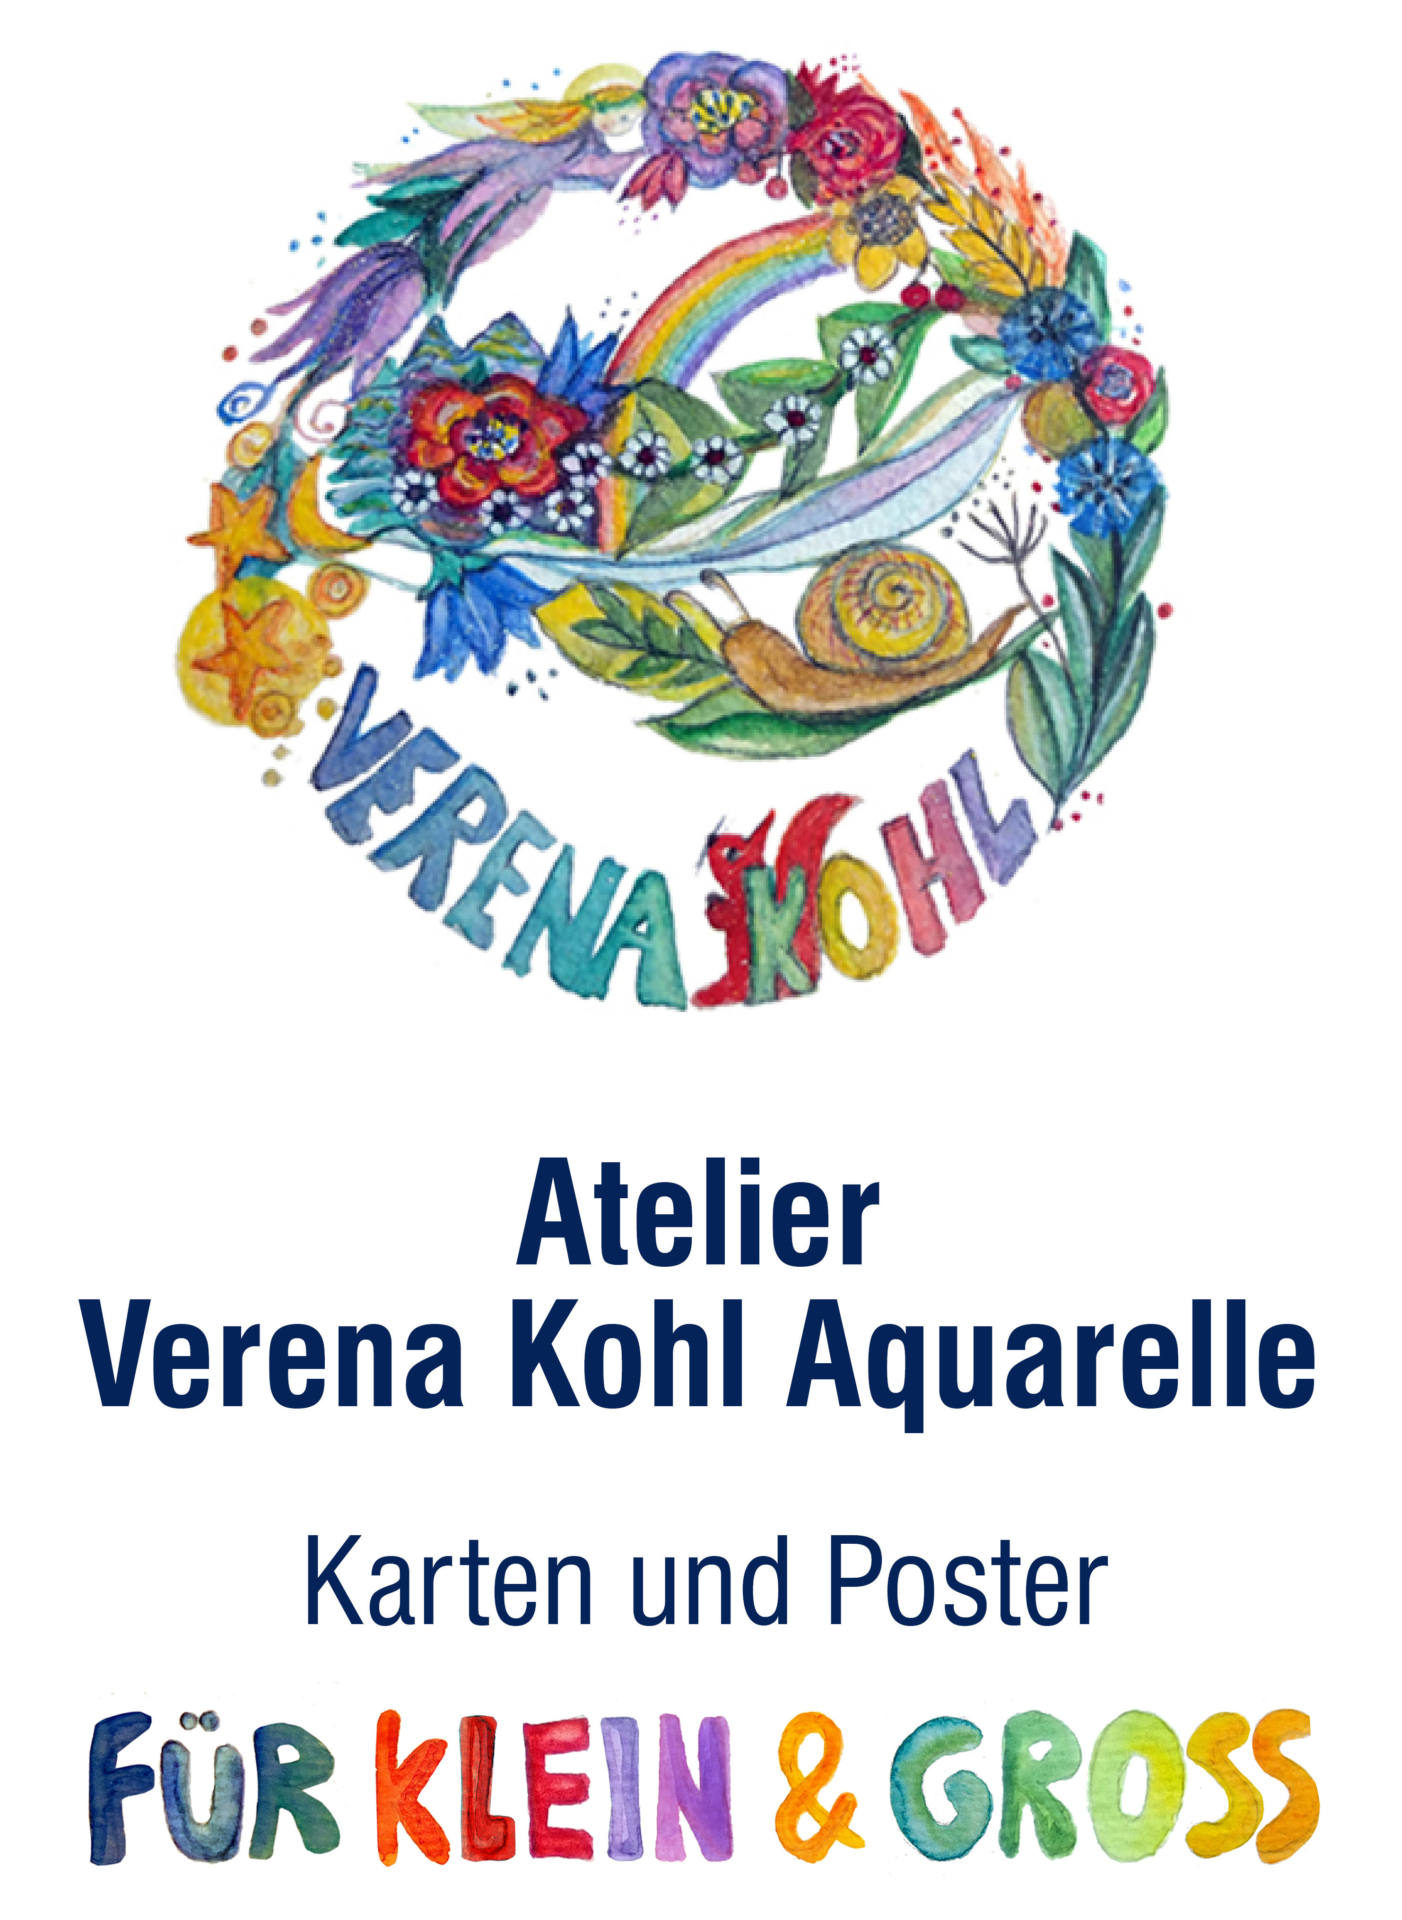 Atelier Verena Kohl Aquarelle – Soreia Arts